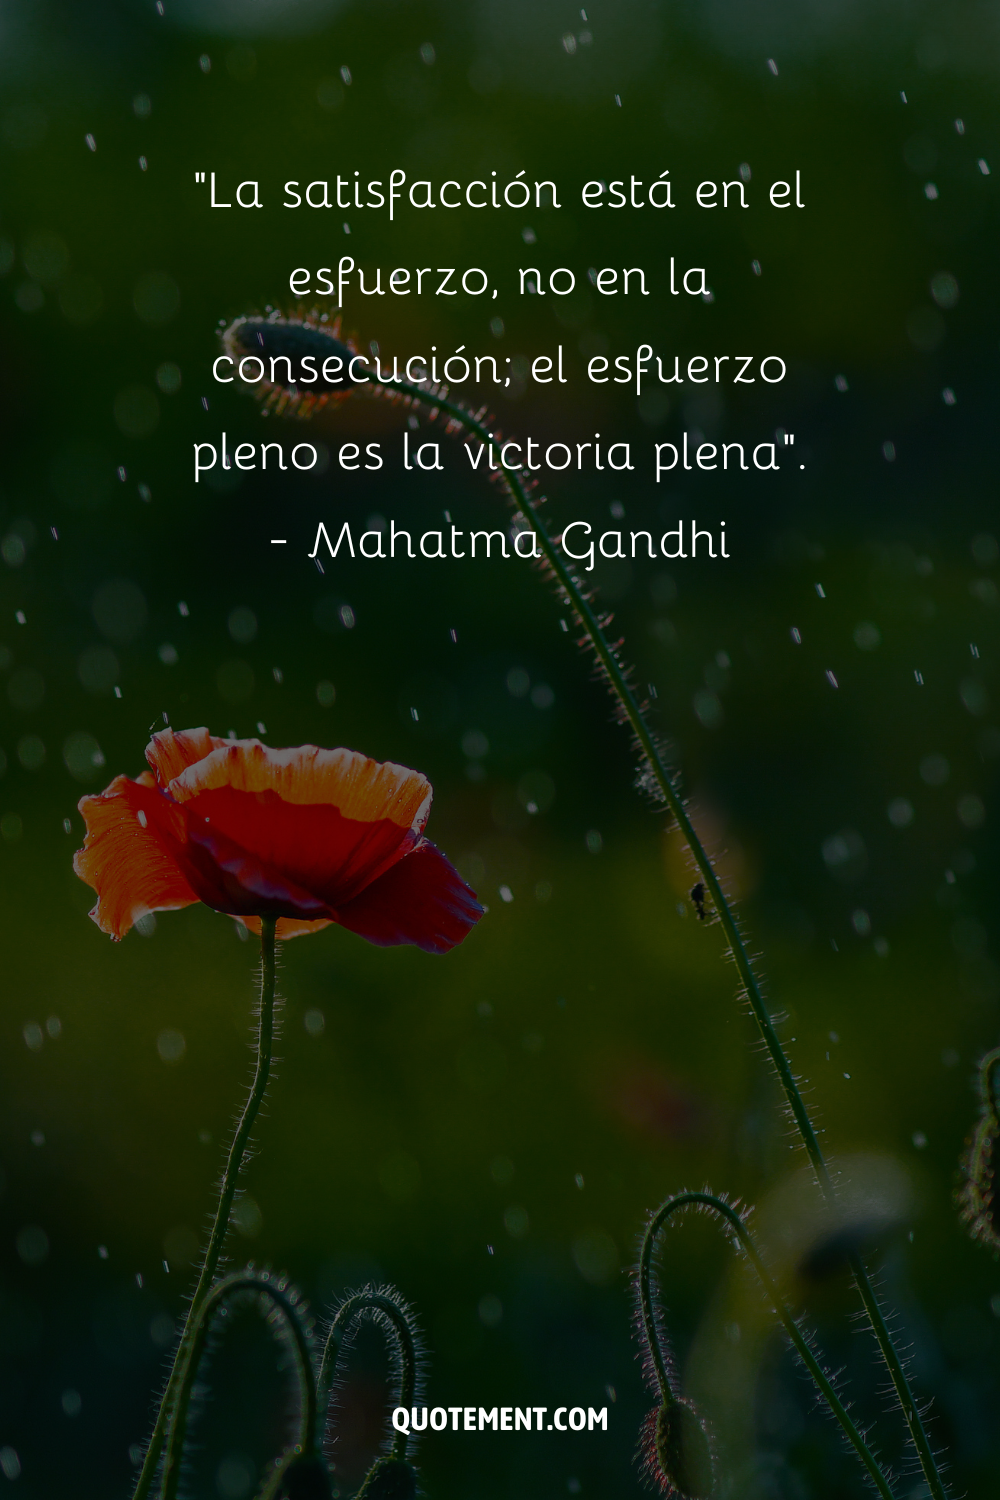 "La satisfacción reside en el esfuerzo, no en el logro; el esfuerzo pleno es la victoria plena". - Mahatma Gandhi